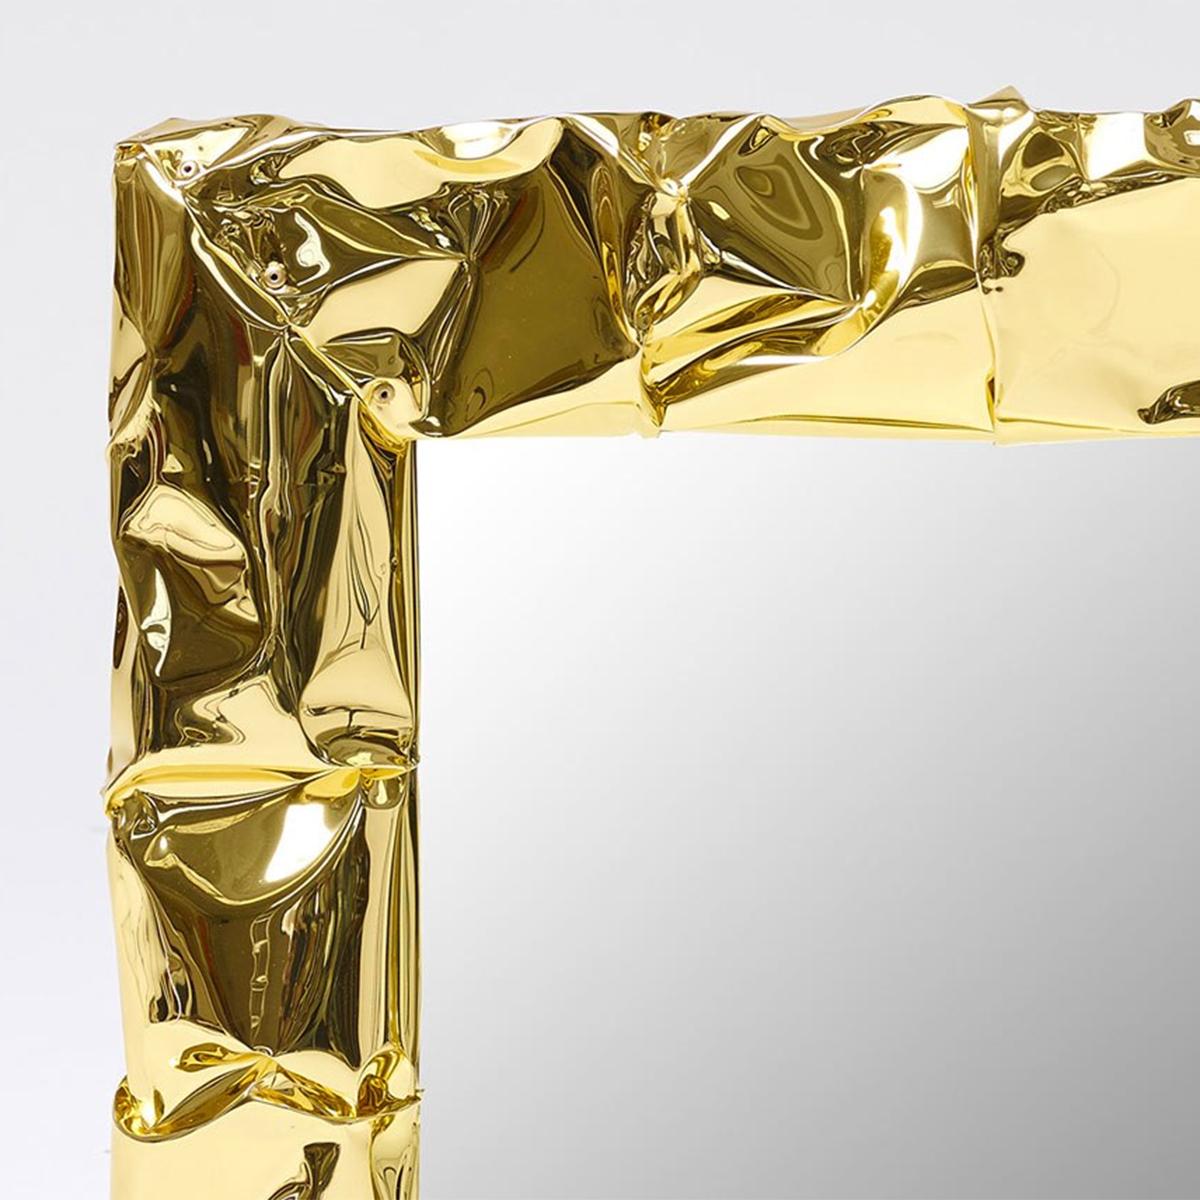 Mirror Bumpy quadratischen Gold mit Hand-strained poliert 
aluminiumrahmen in Goldoptik. Mit Spiegelglas. Maße: L 50 x T 8 x H 50cm.
Auch in verchromter Ausführung erhältlich.